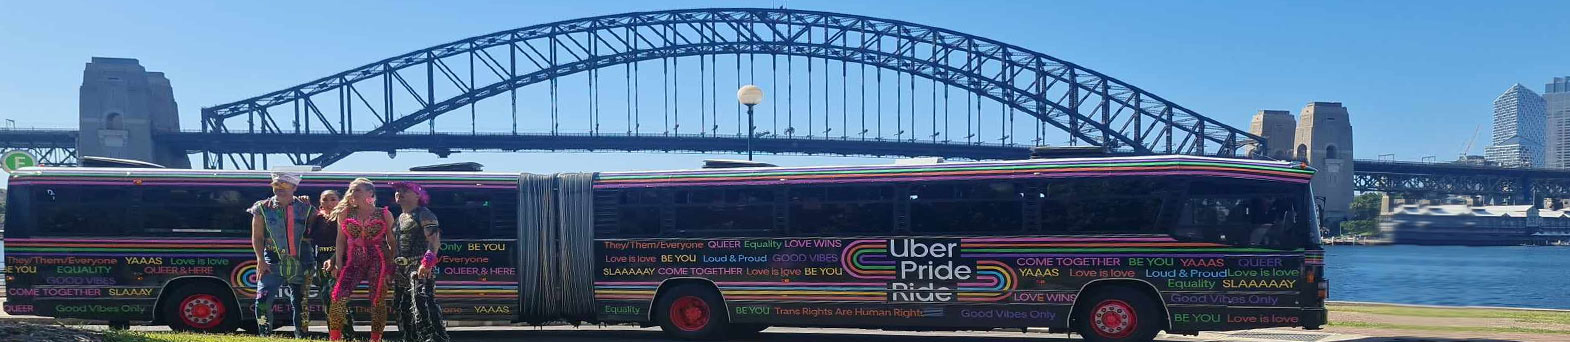 uber pride ride - sydney bus hire